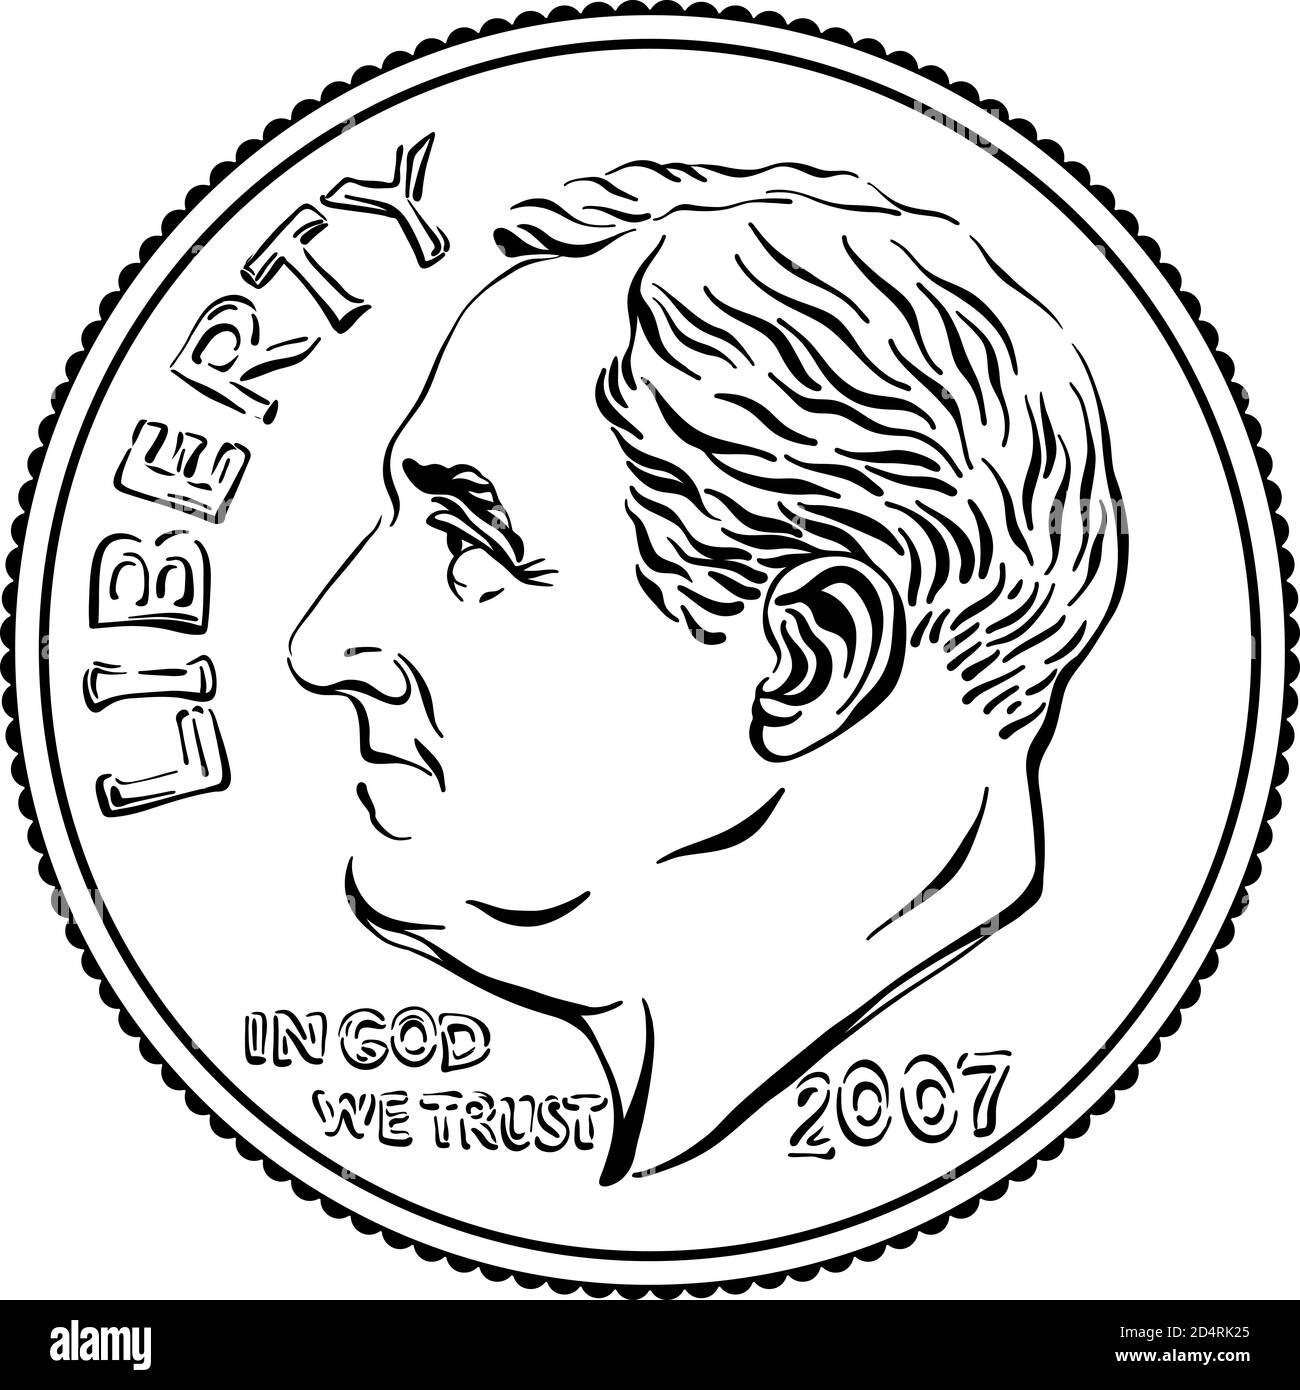 Amerikanisches Geld Roosevelt Dime, Vereinigte Staaten ein Dime oder 10-Cent-Silbermünze mit Präsident Franklin D Roosevelt auf der Vorderseite. Schwarzweiß-Bild Stock Vektor